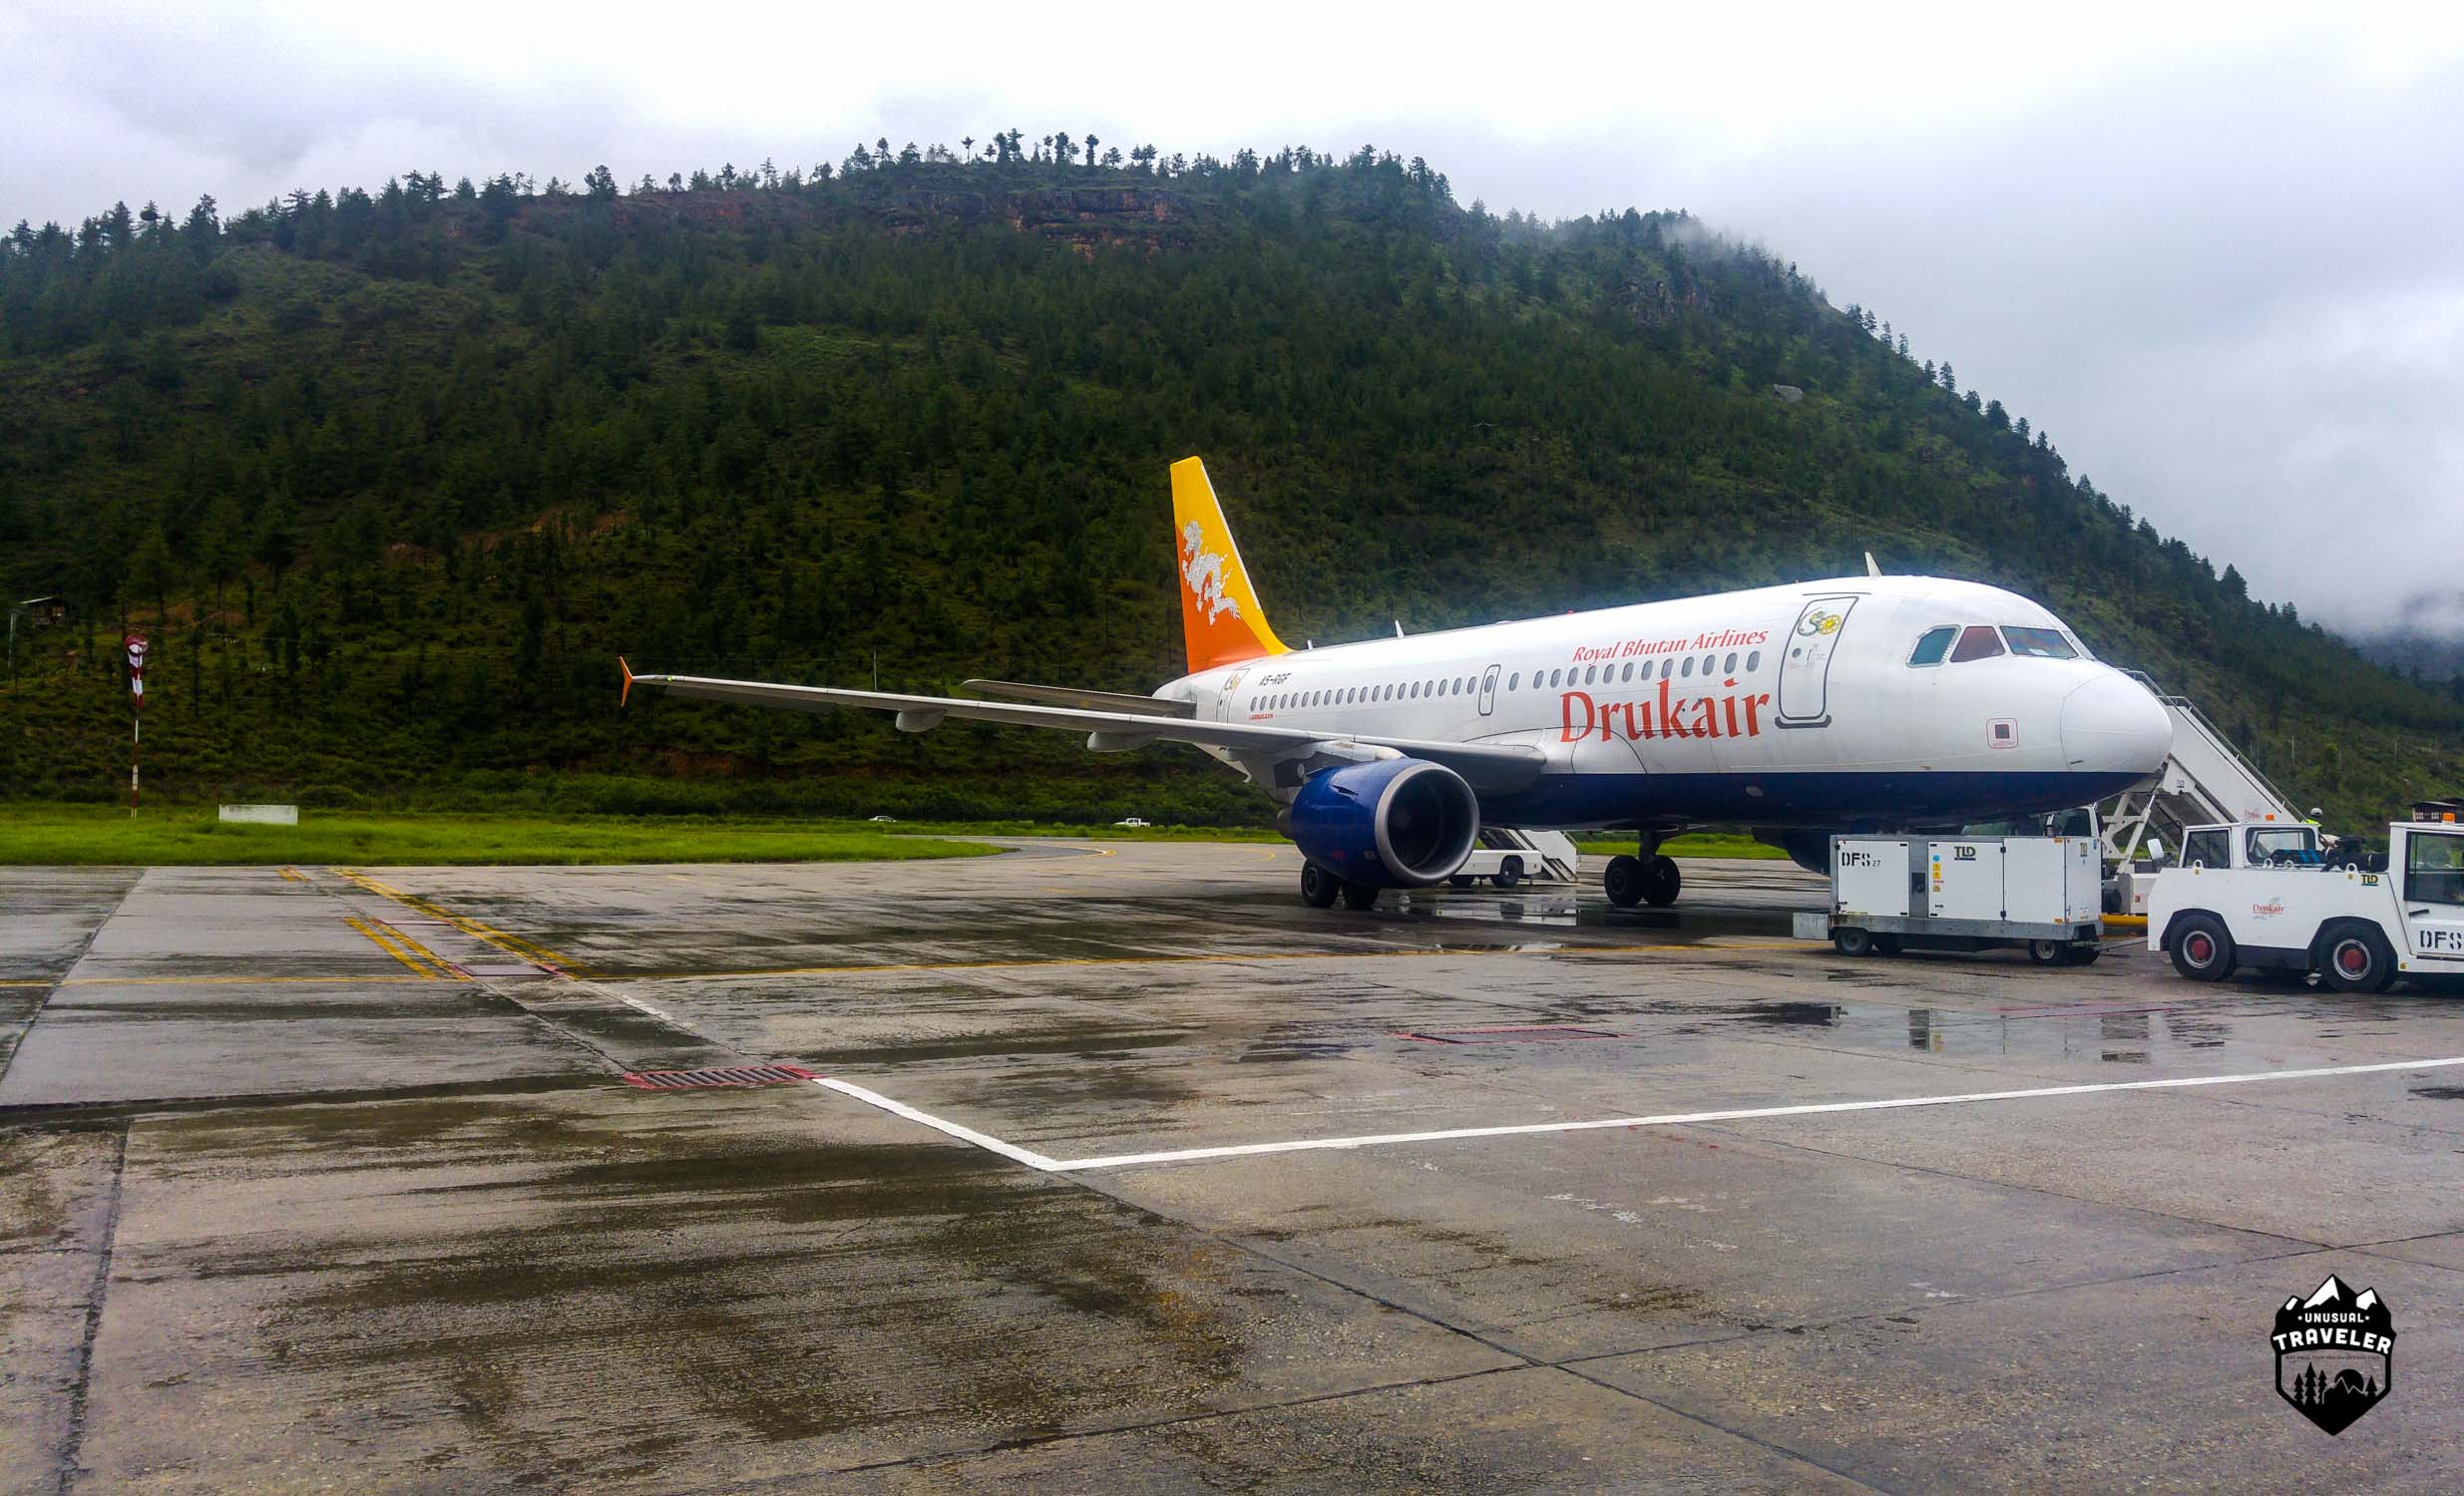 National Airline of Bhutan, Druk Air.